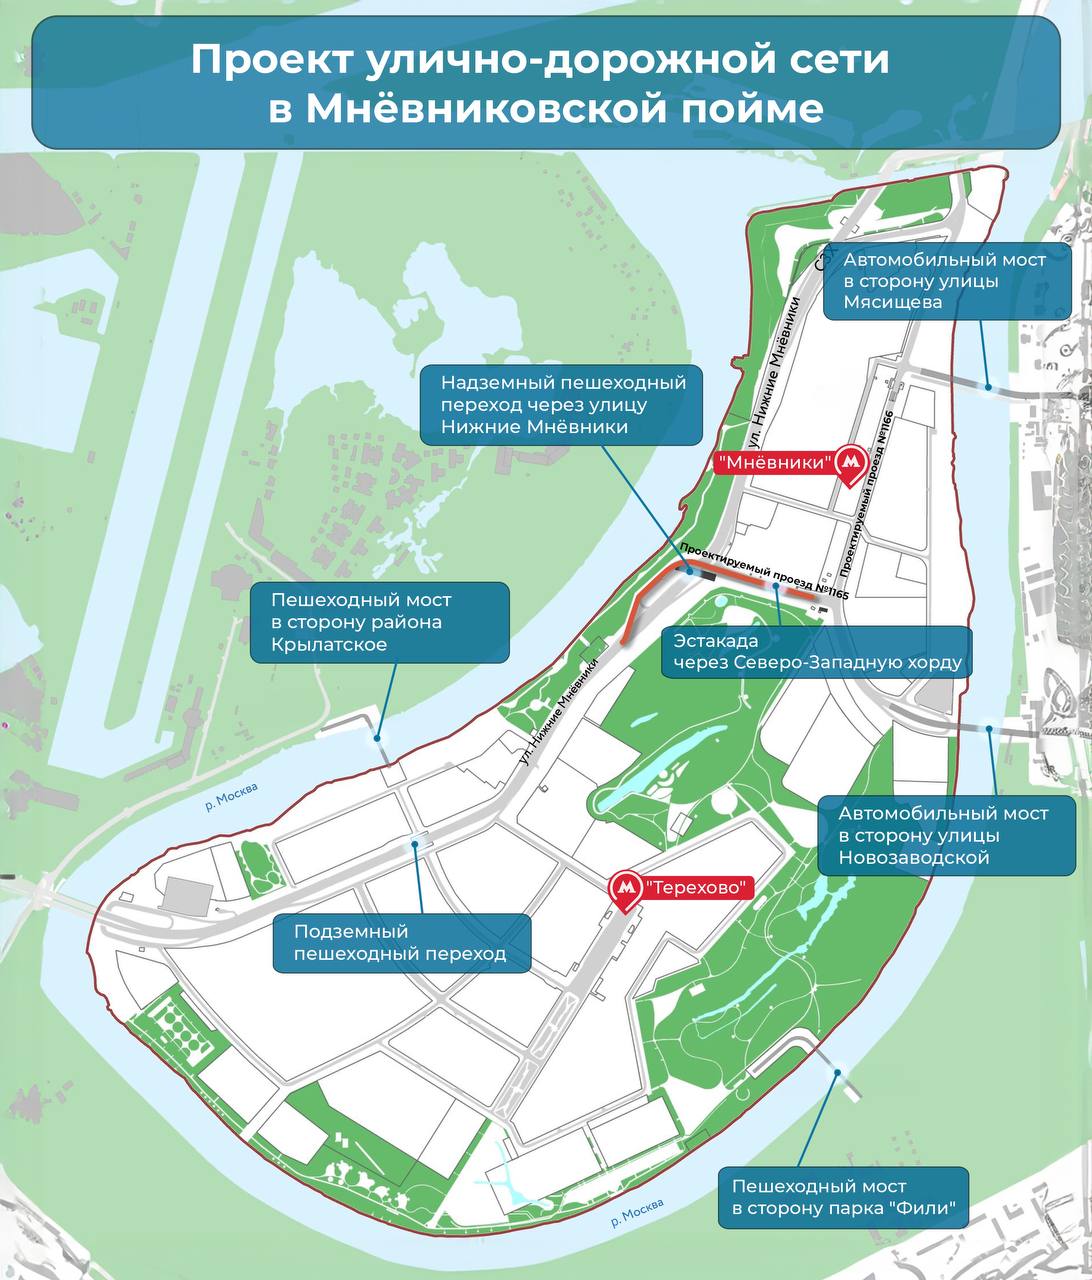 Новые дороги и мосты построят в Мнёвниковской пойме